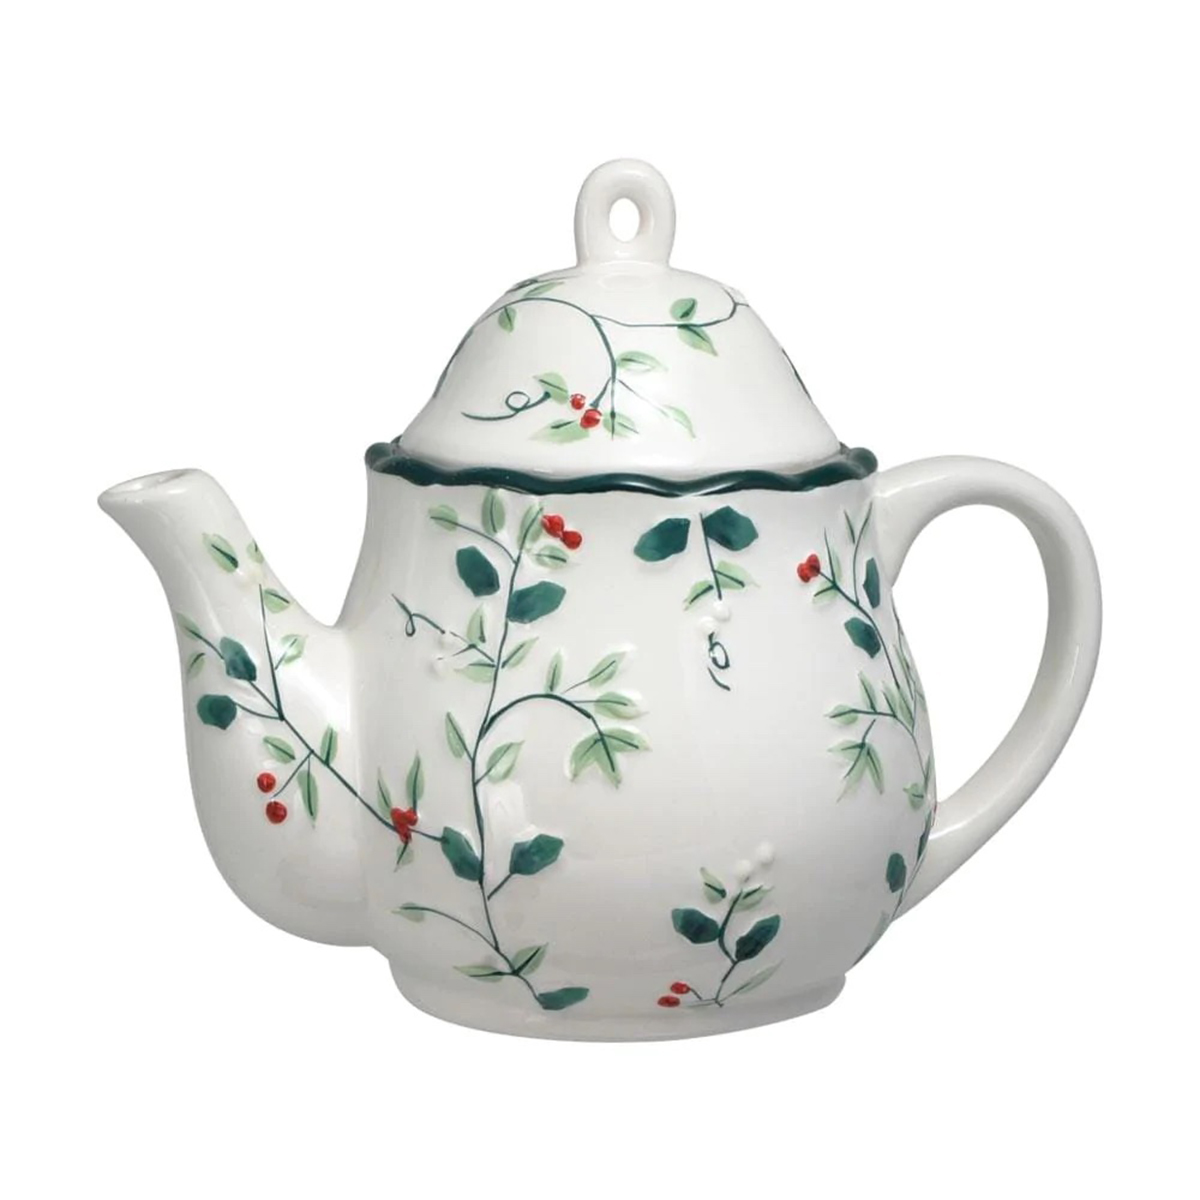 Pfaltzgraff(R) Winterberry Sculptured Tea Pot